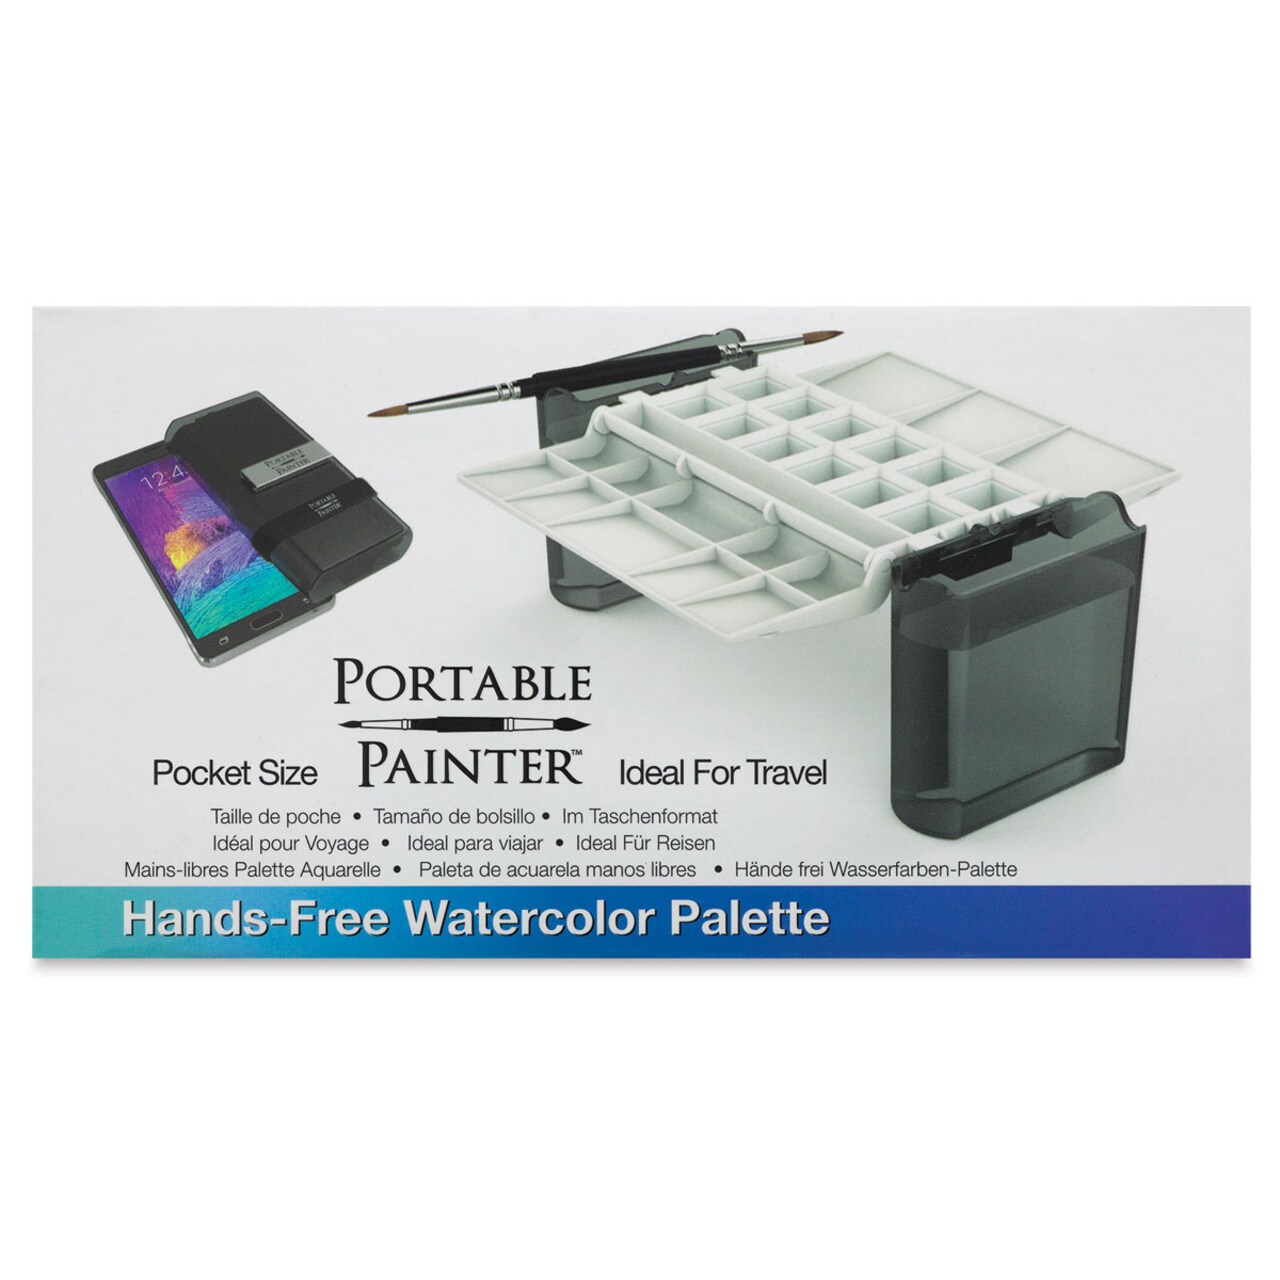 Portable Painter Watercolor Palette